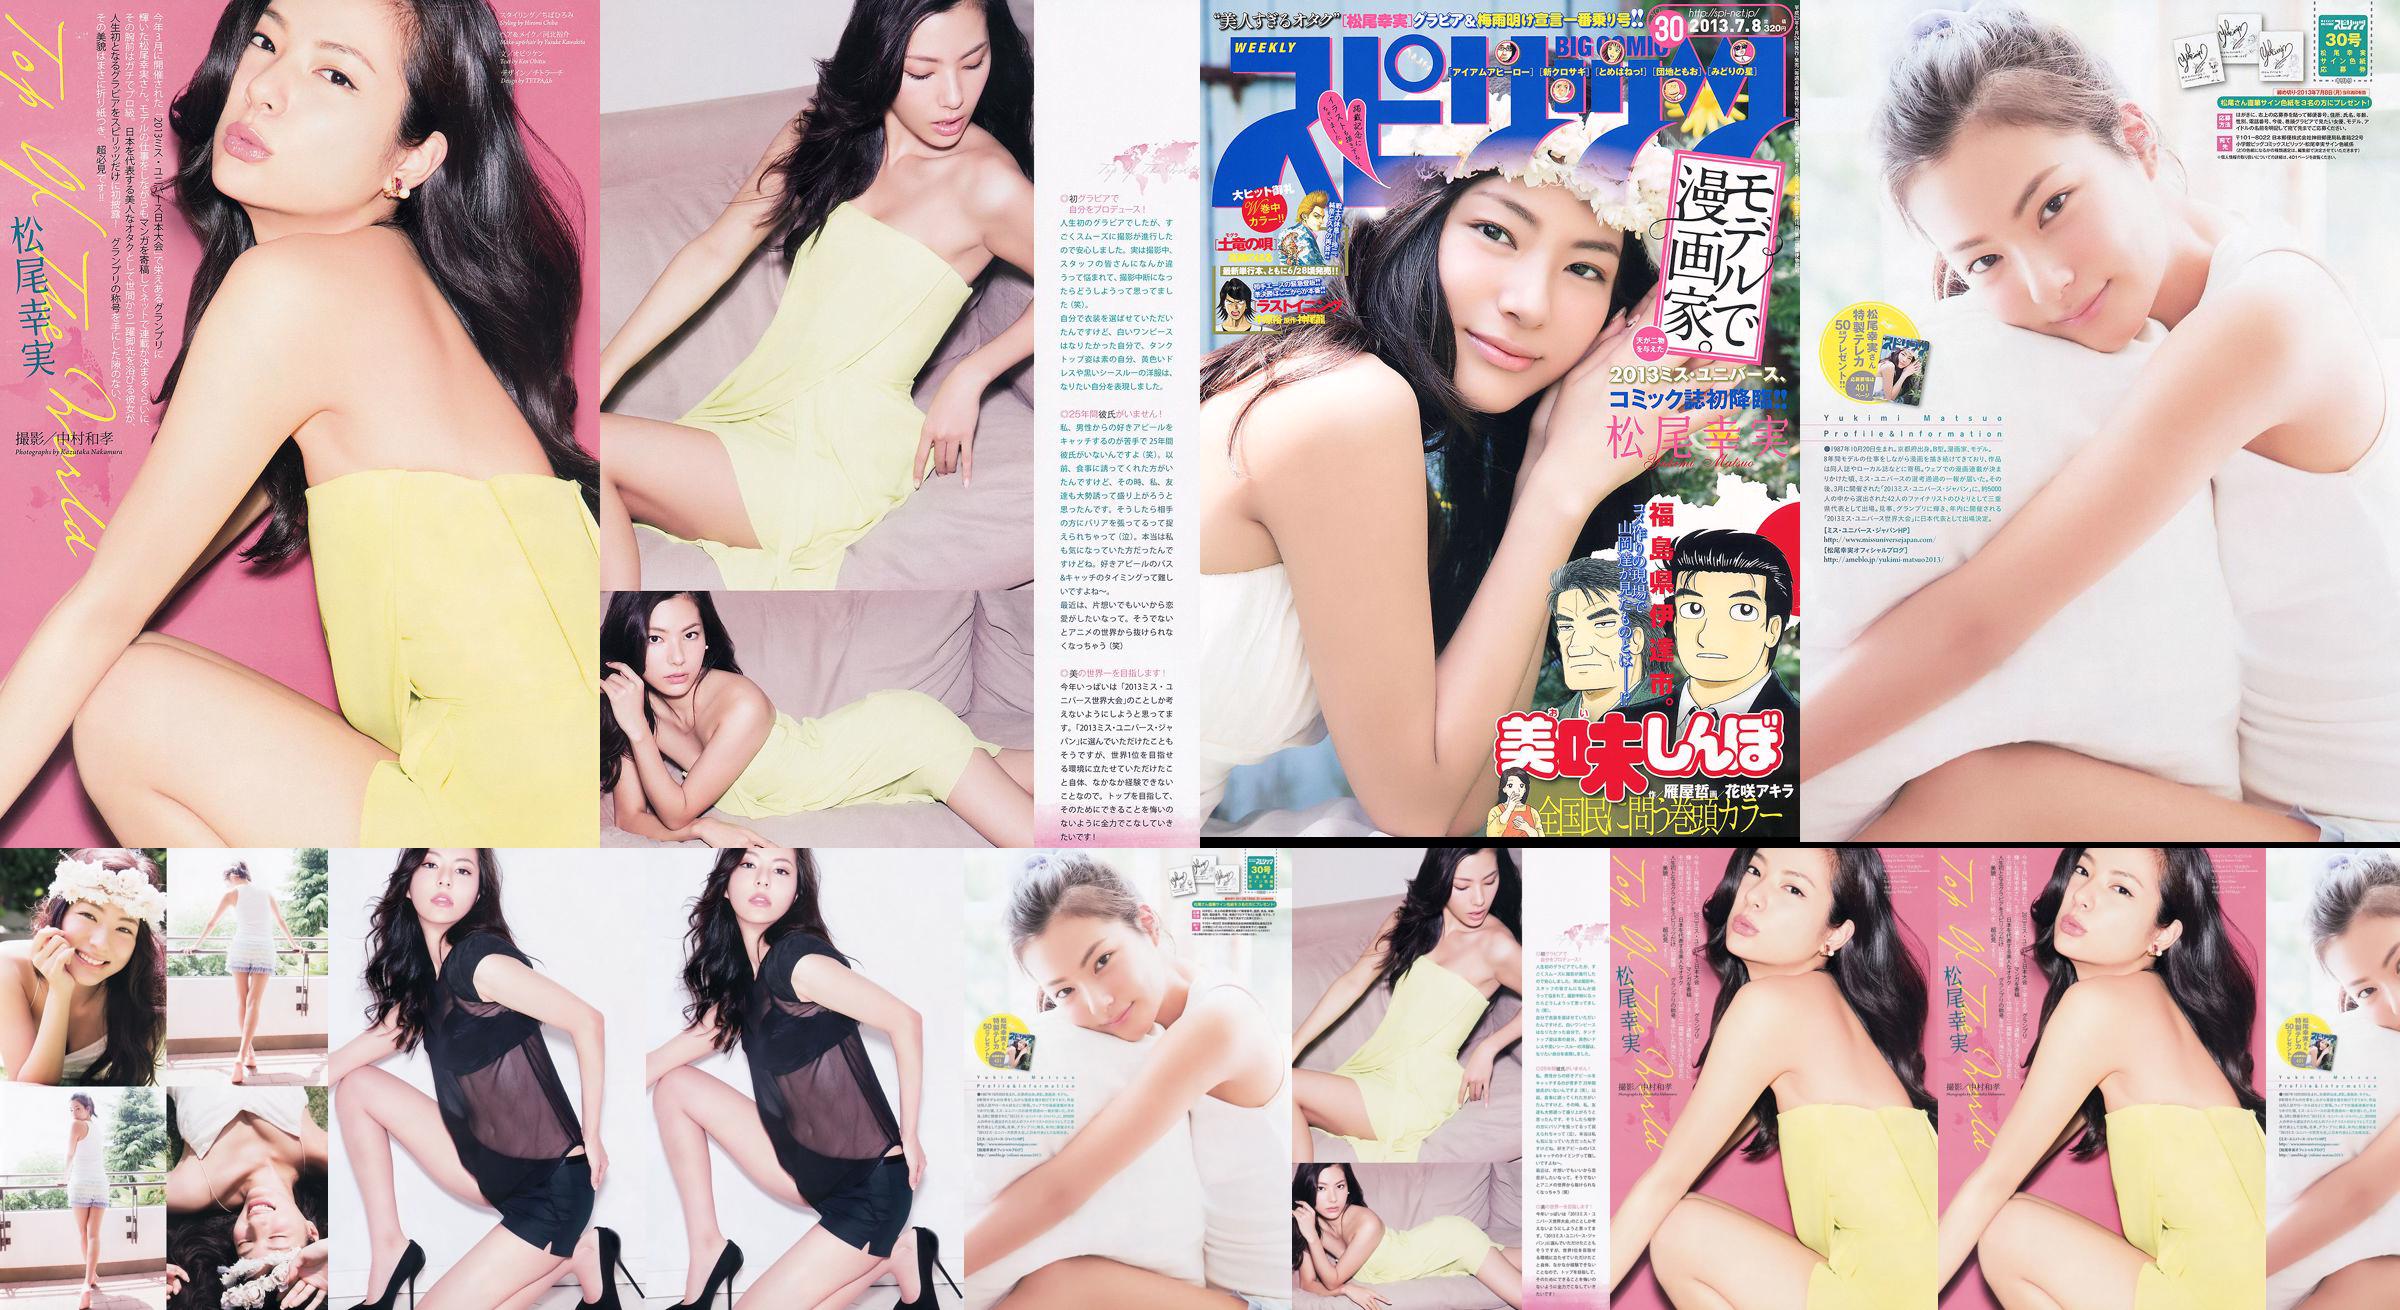 [Weekly Big Comic Spirits] Komi Matsuo 2013 No.30 Photo Magazine No.e2066b หน้า 1